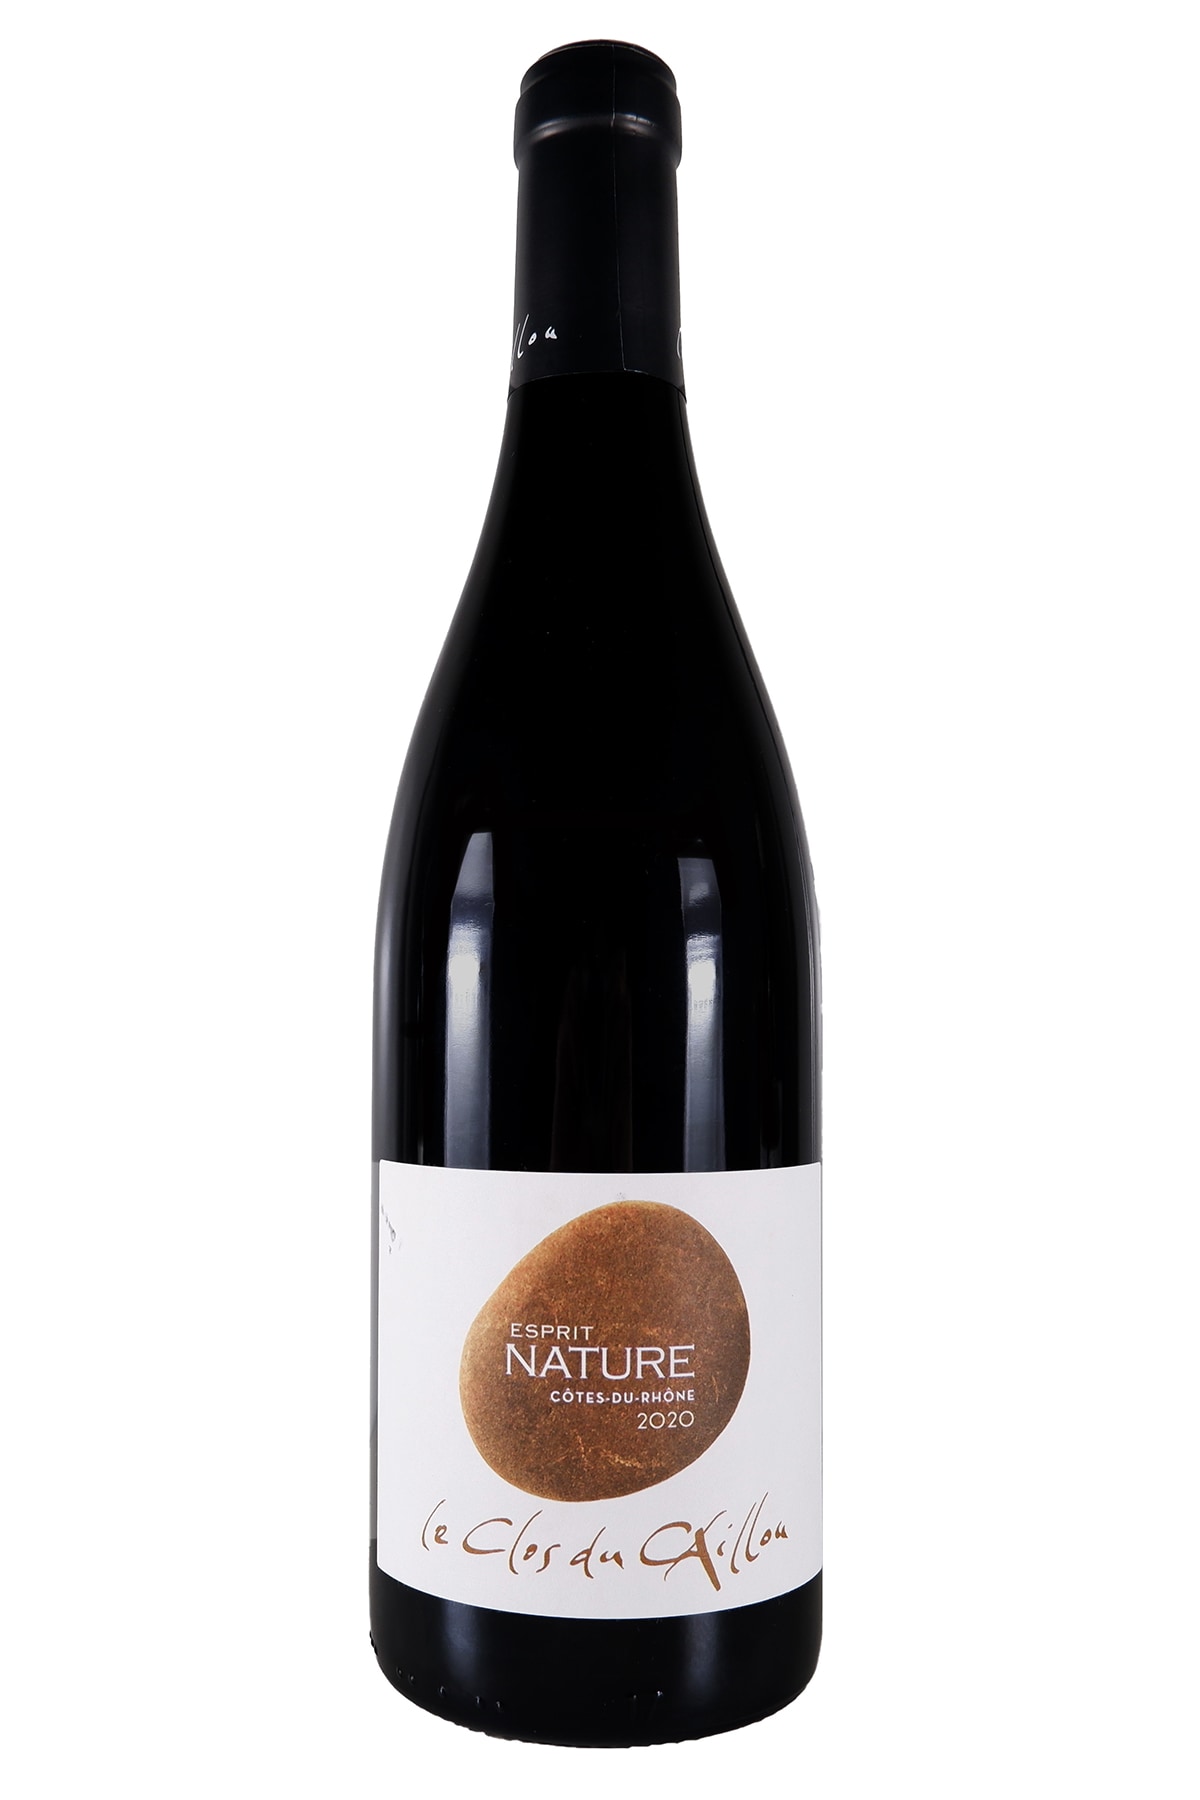 自然派ワイン】BIO】キュヴェ・マリー・セシル2002 (ボルドー白ワイン)バルテルミ